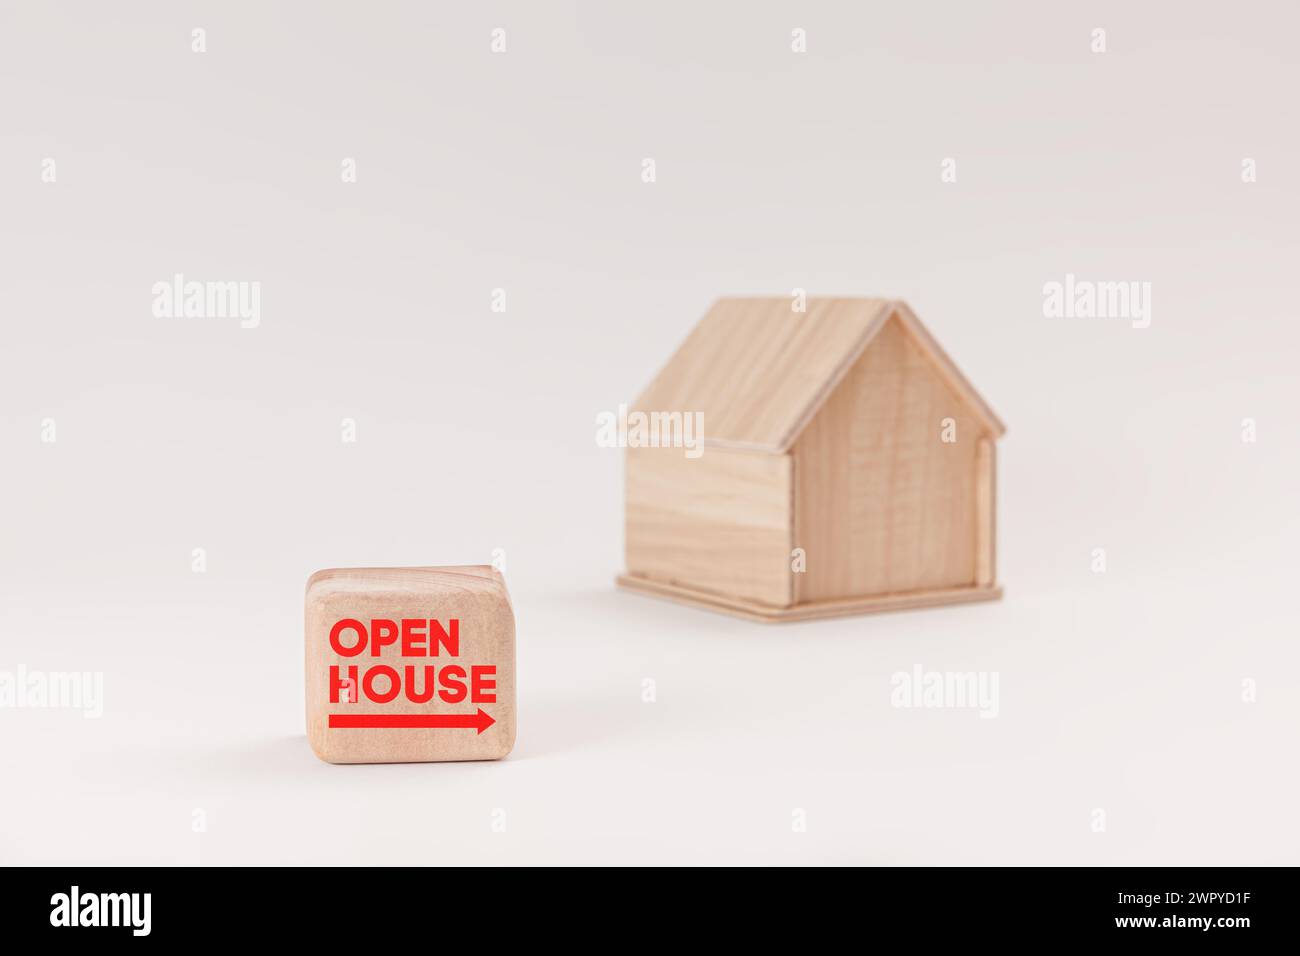 Modèle de maison en bois simpliste isolé sur fond vert pâle, avec texte Open House sur panneau. Banque D'Images